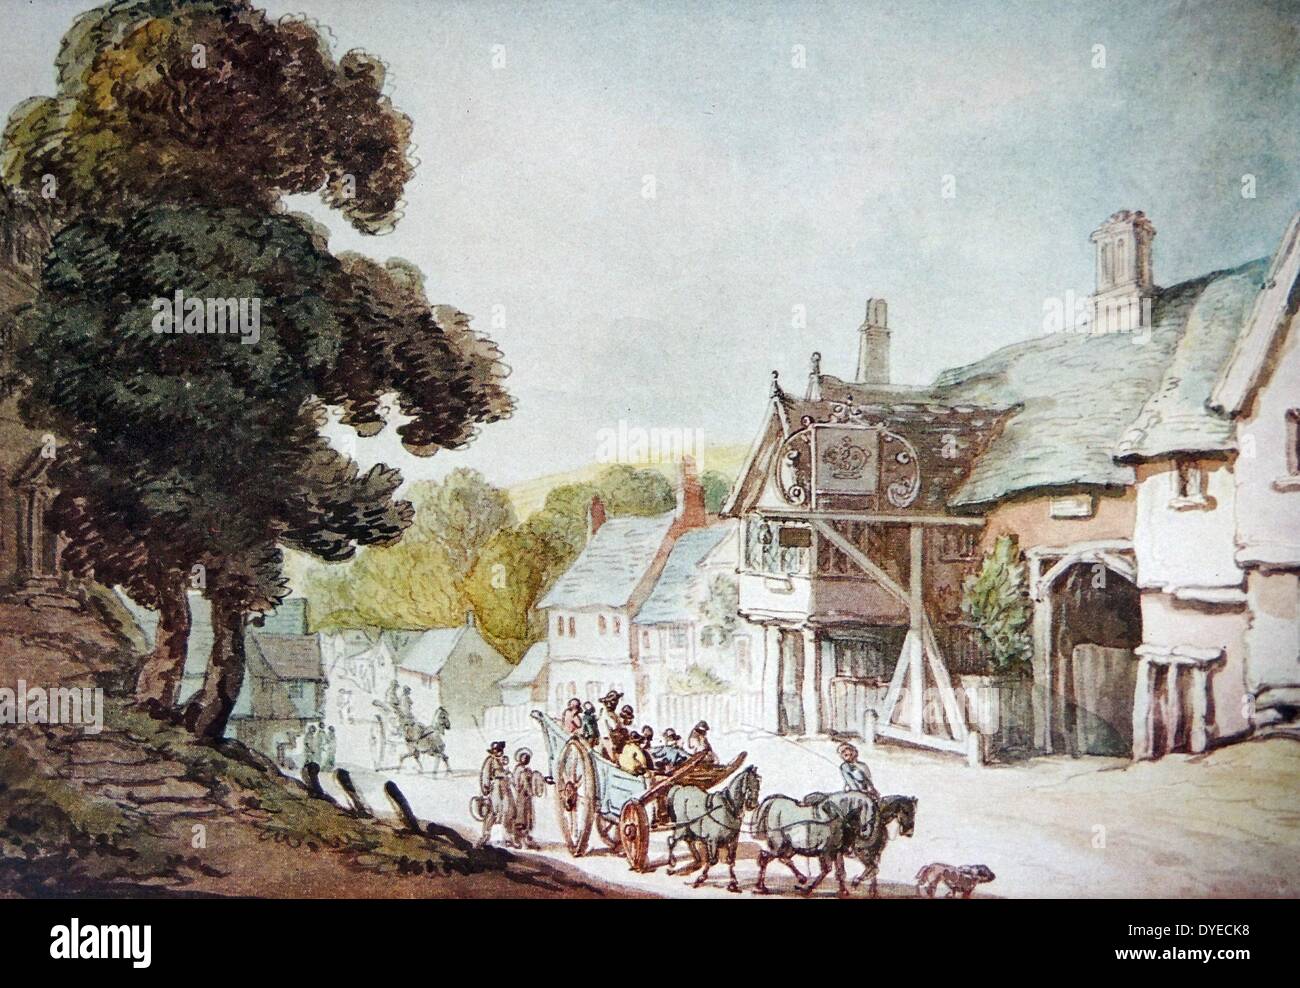 Landschaft Gemälde mit dem Titel "Broadway, Worcestershire'. Das Gemälde zeigt eine Straßenszene mit einem Pferd ziehen einen großen Schlitten mit Menschen gefüllt. Von Thomas Rowlandson (1756-1827), englischer Künstler und Karikaturist. Vom 1770 Stockfoto